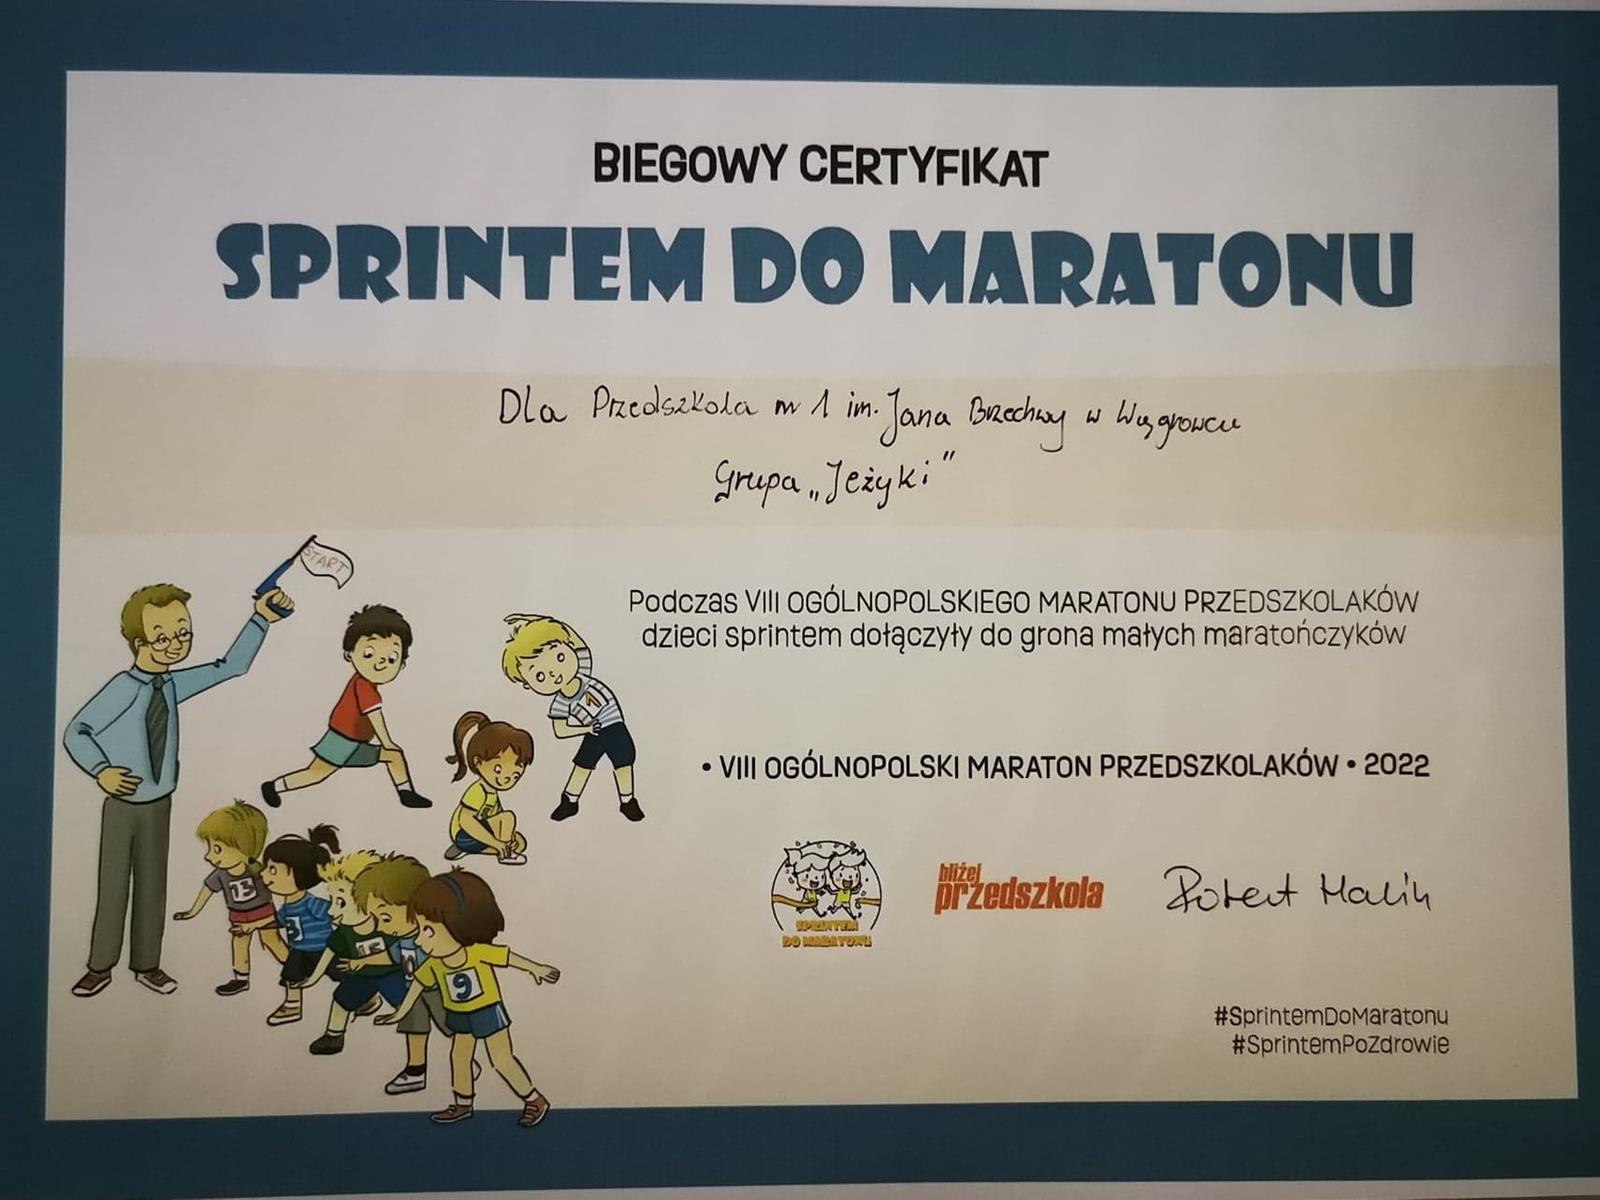 Zdjęcie z wydarzenia: Jeżyki - Sprintem do maratonu - przedstawia certyfikat